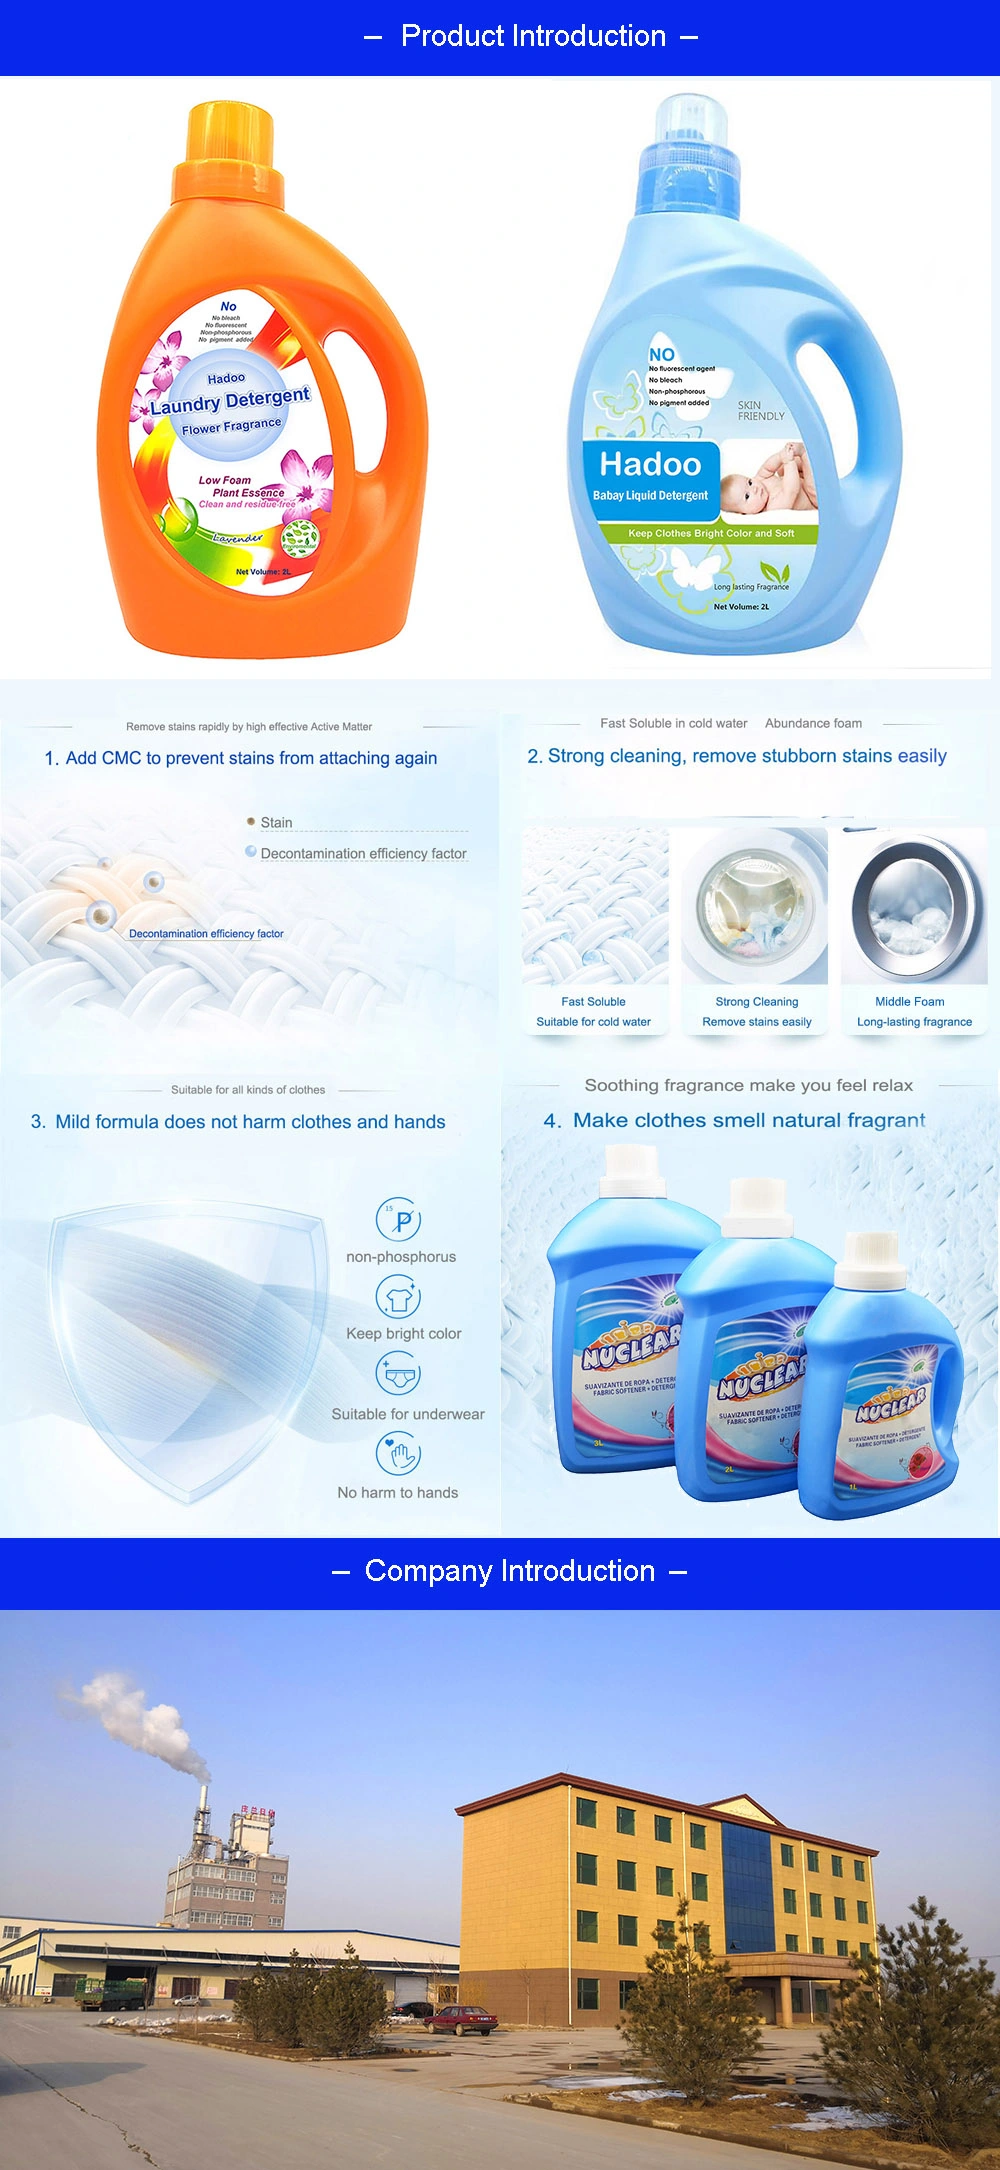 OEM Bulk Liquid Laundry Detergent / Liquid Washing Detergent with Flower Scent